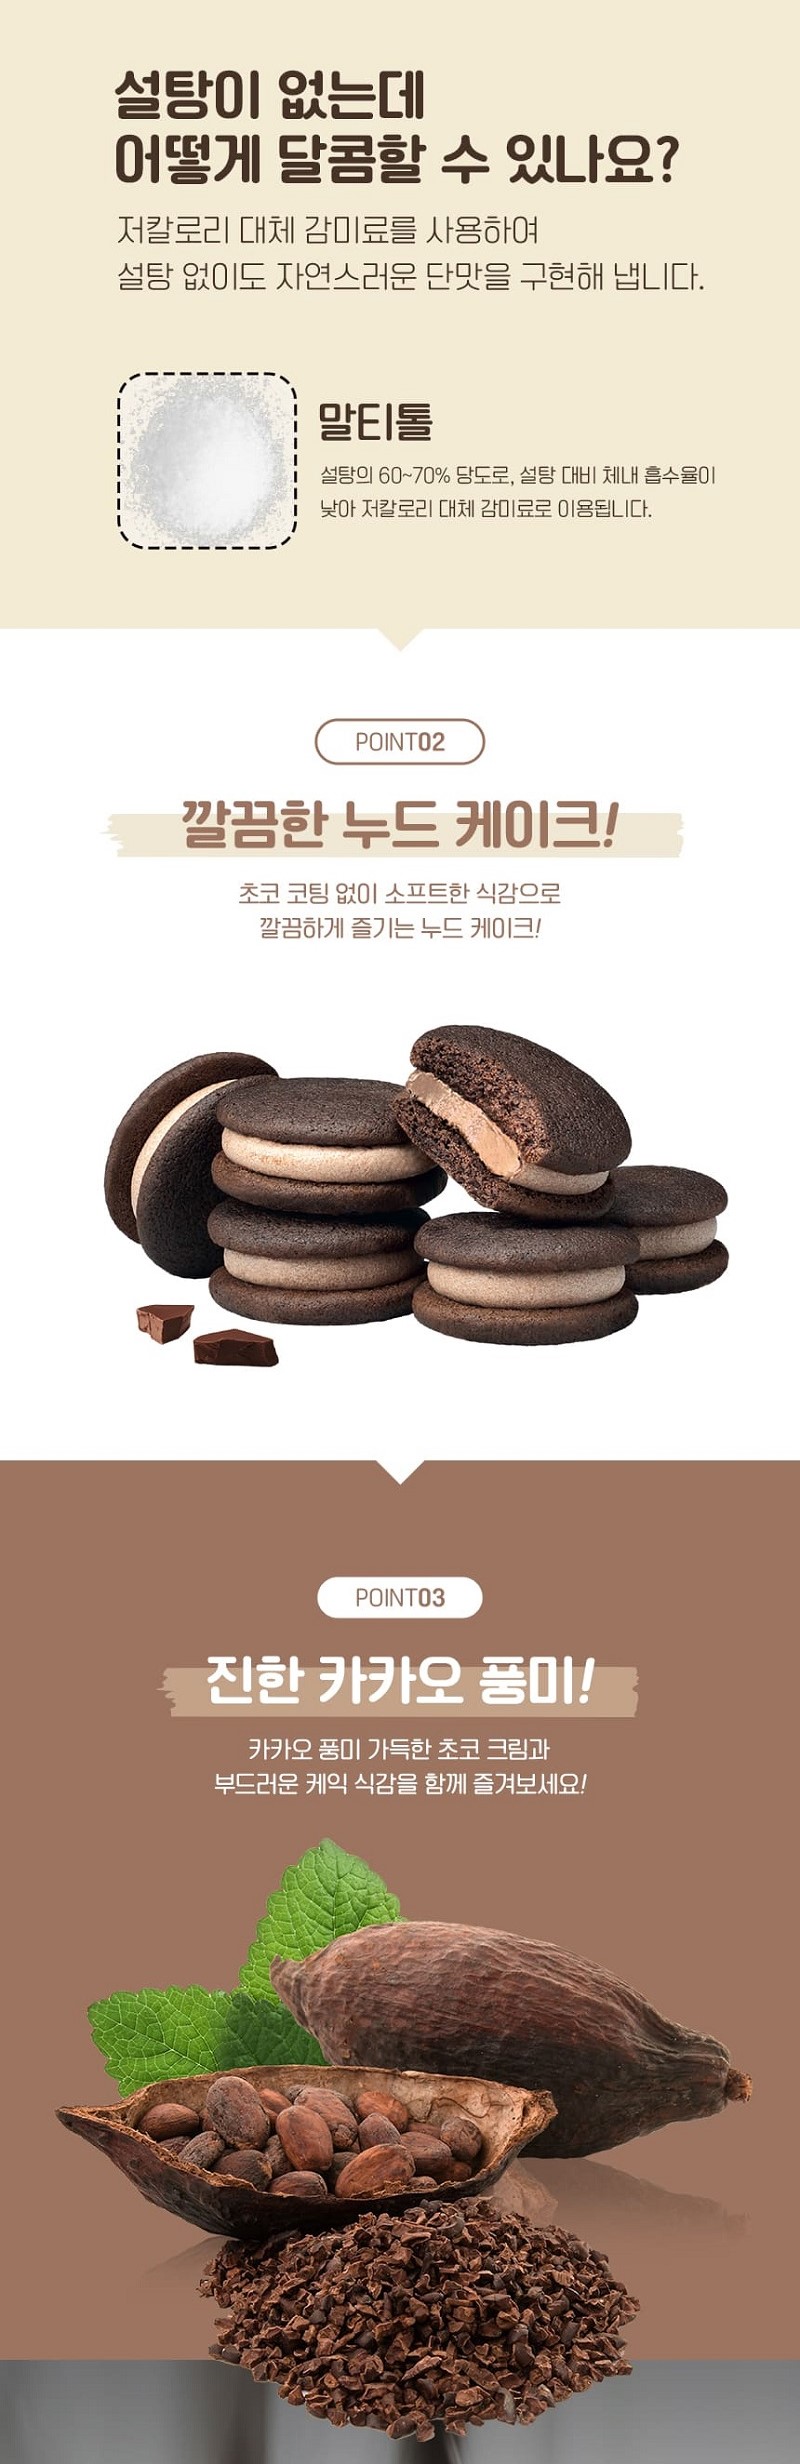 韓國食品-[Lotte] 無糖可可蛋糕 171g